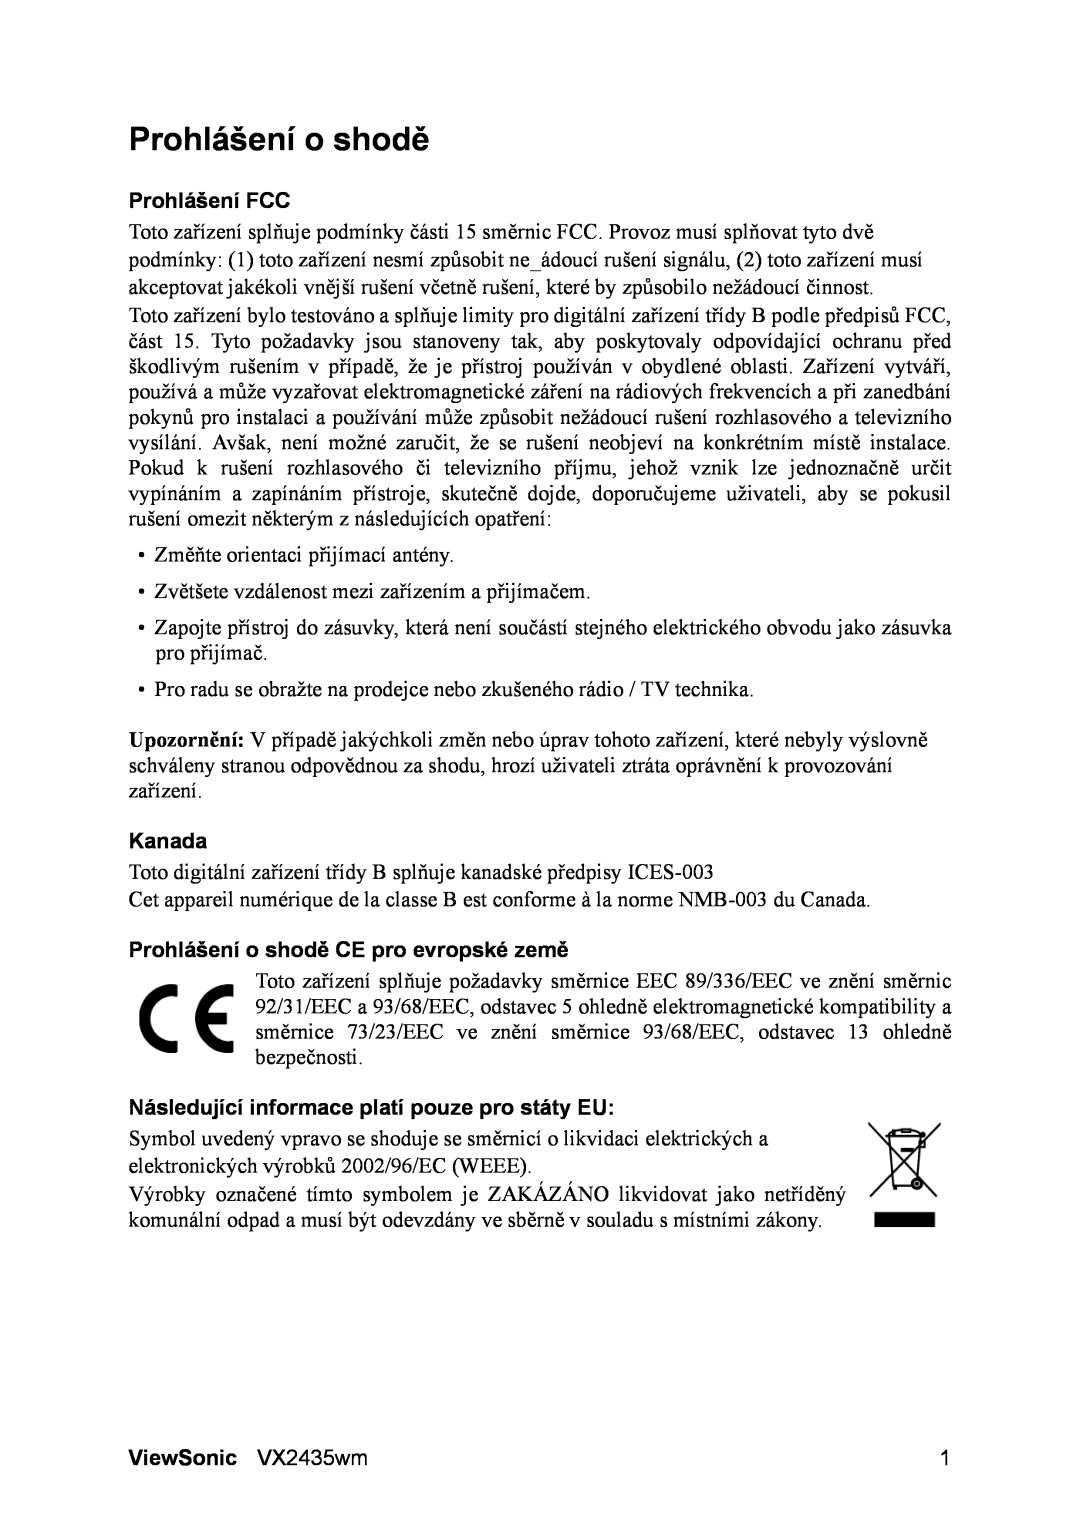 ViewSonic VS11449 manual Prohlášení FCC, Kanada, Prohlášení o shodě CE pro evropské země, ViewSonic VX2435wm 